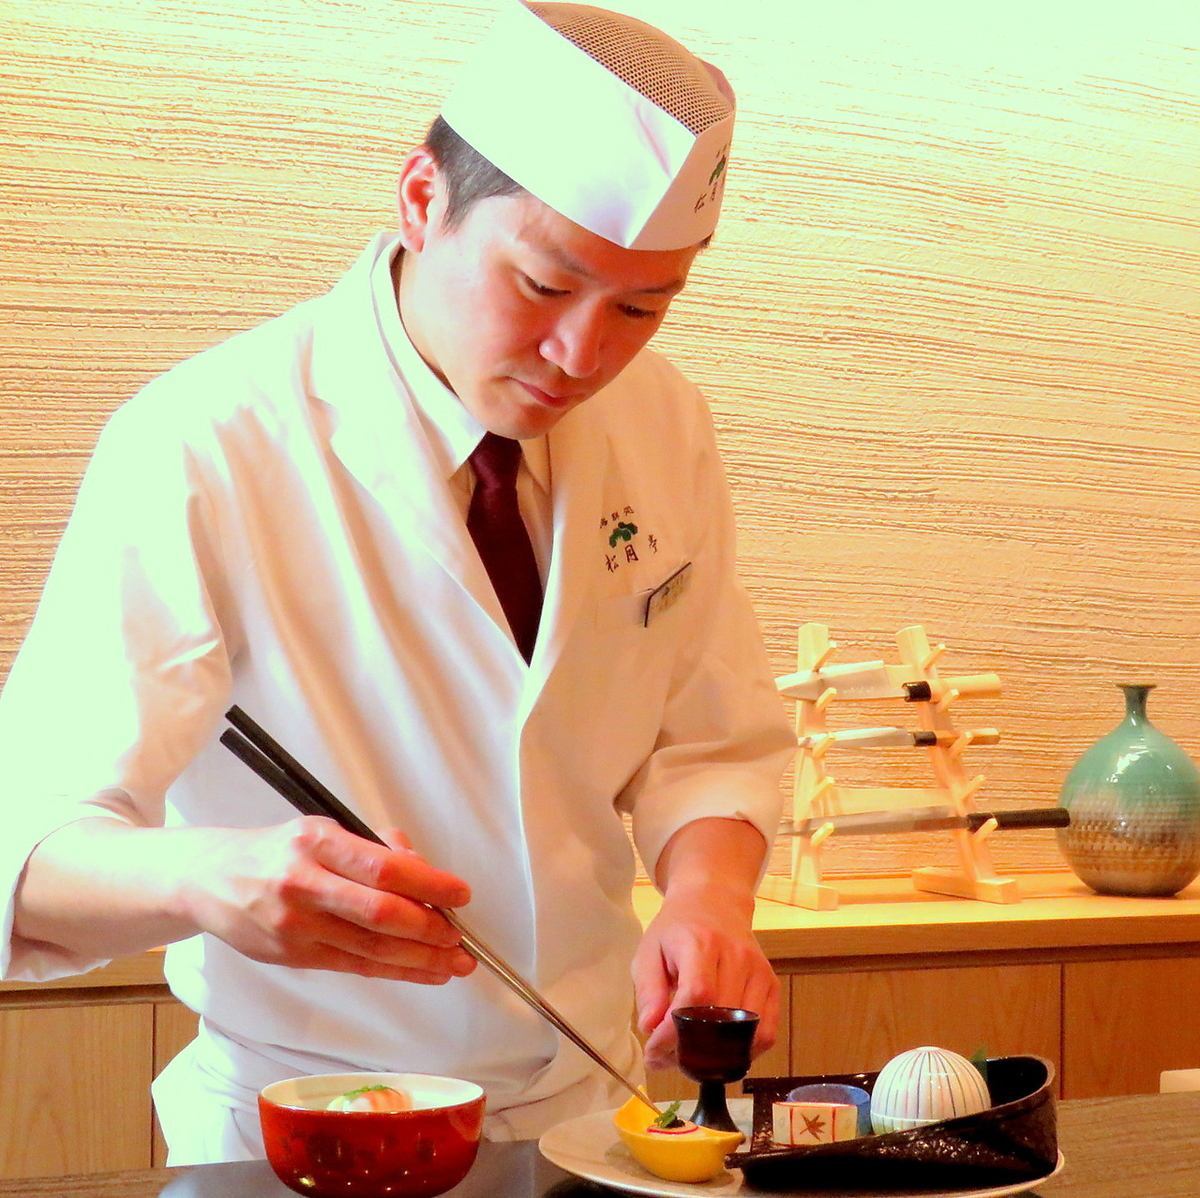 【有完全包间】在安静的氛围中享受大人的日本料理。